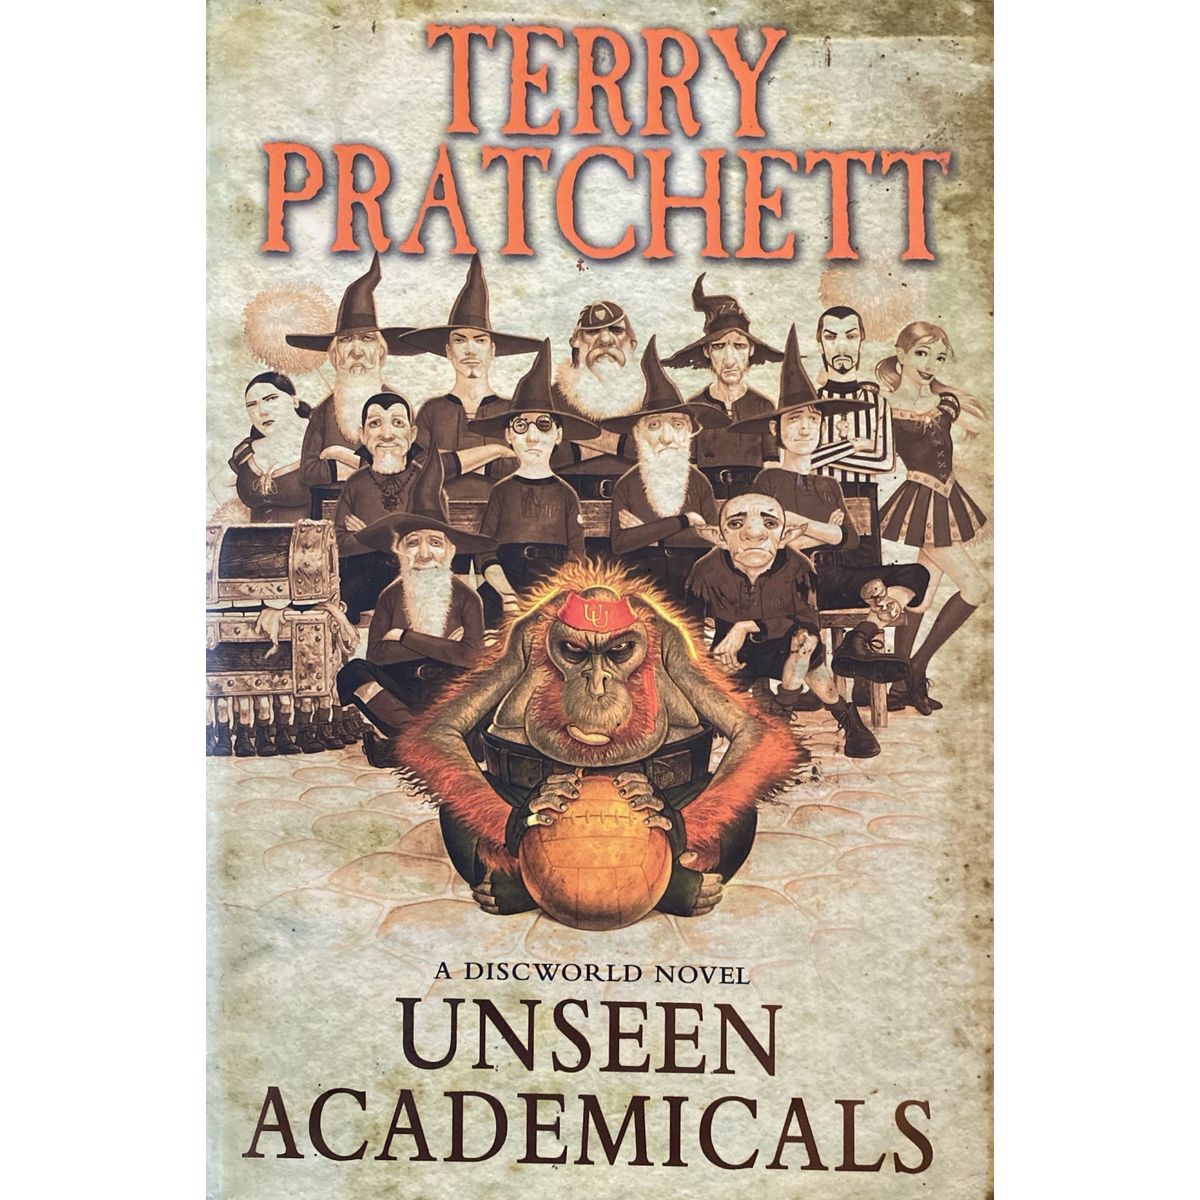 ISBN: 9780385609340 / 0385609345 - Unseen Academicals: A Discworld Novel by Terry Pratchett [2009]